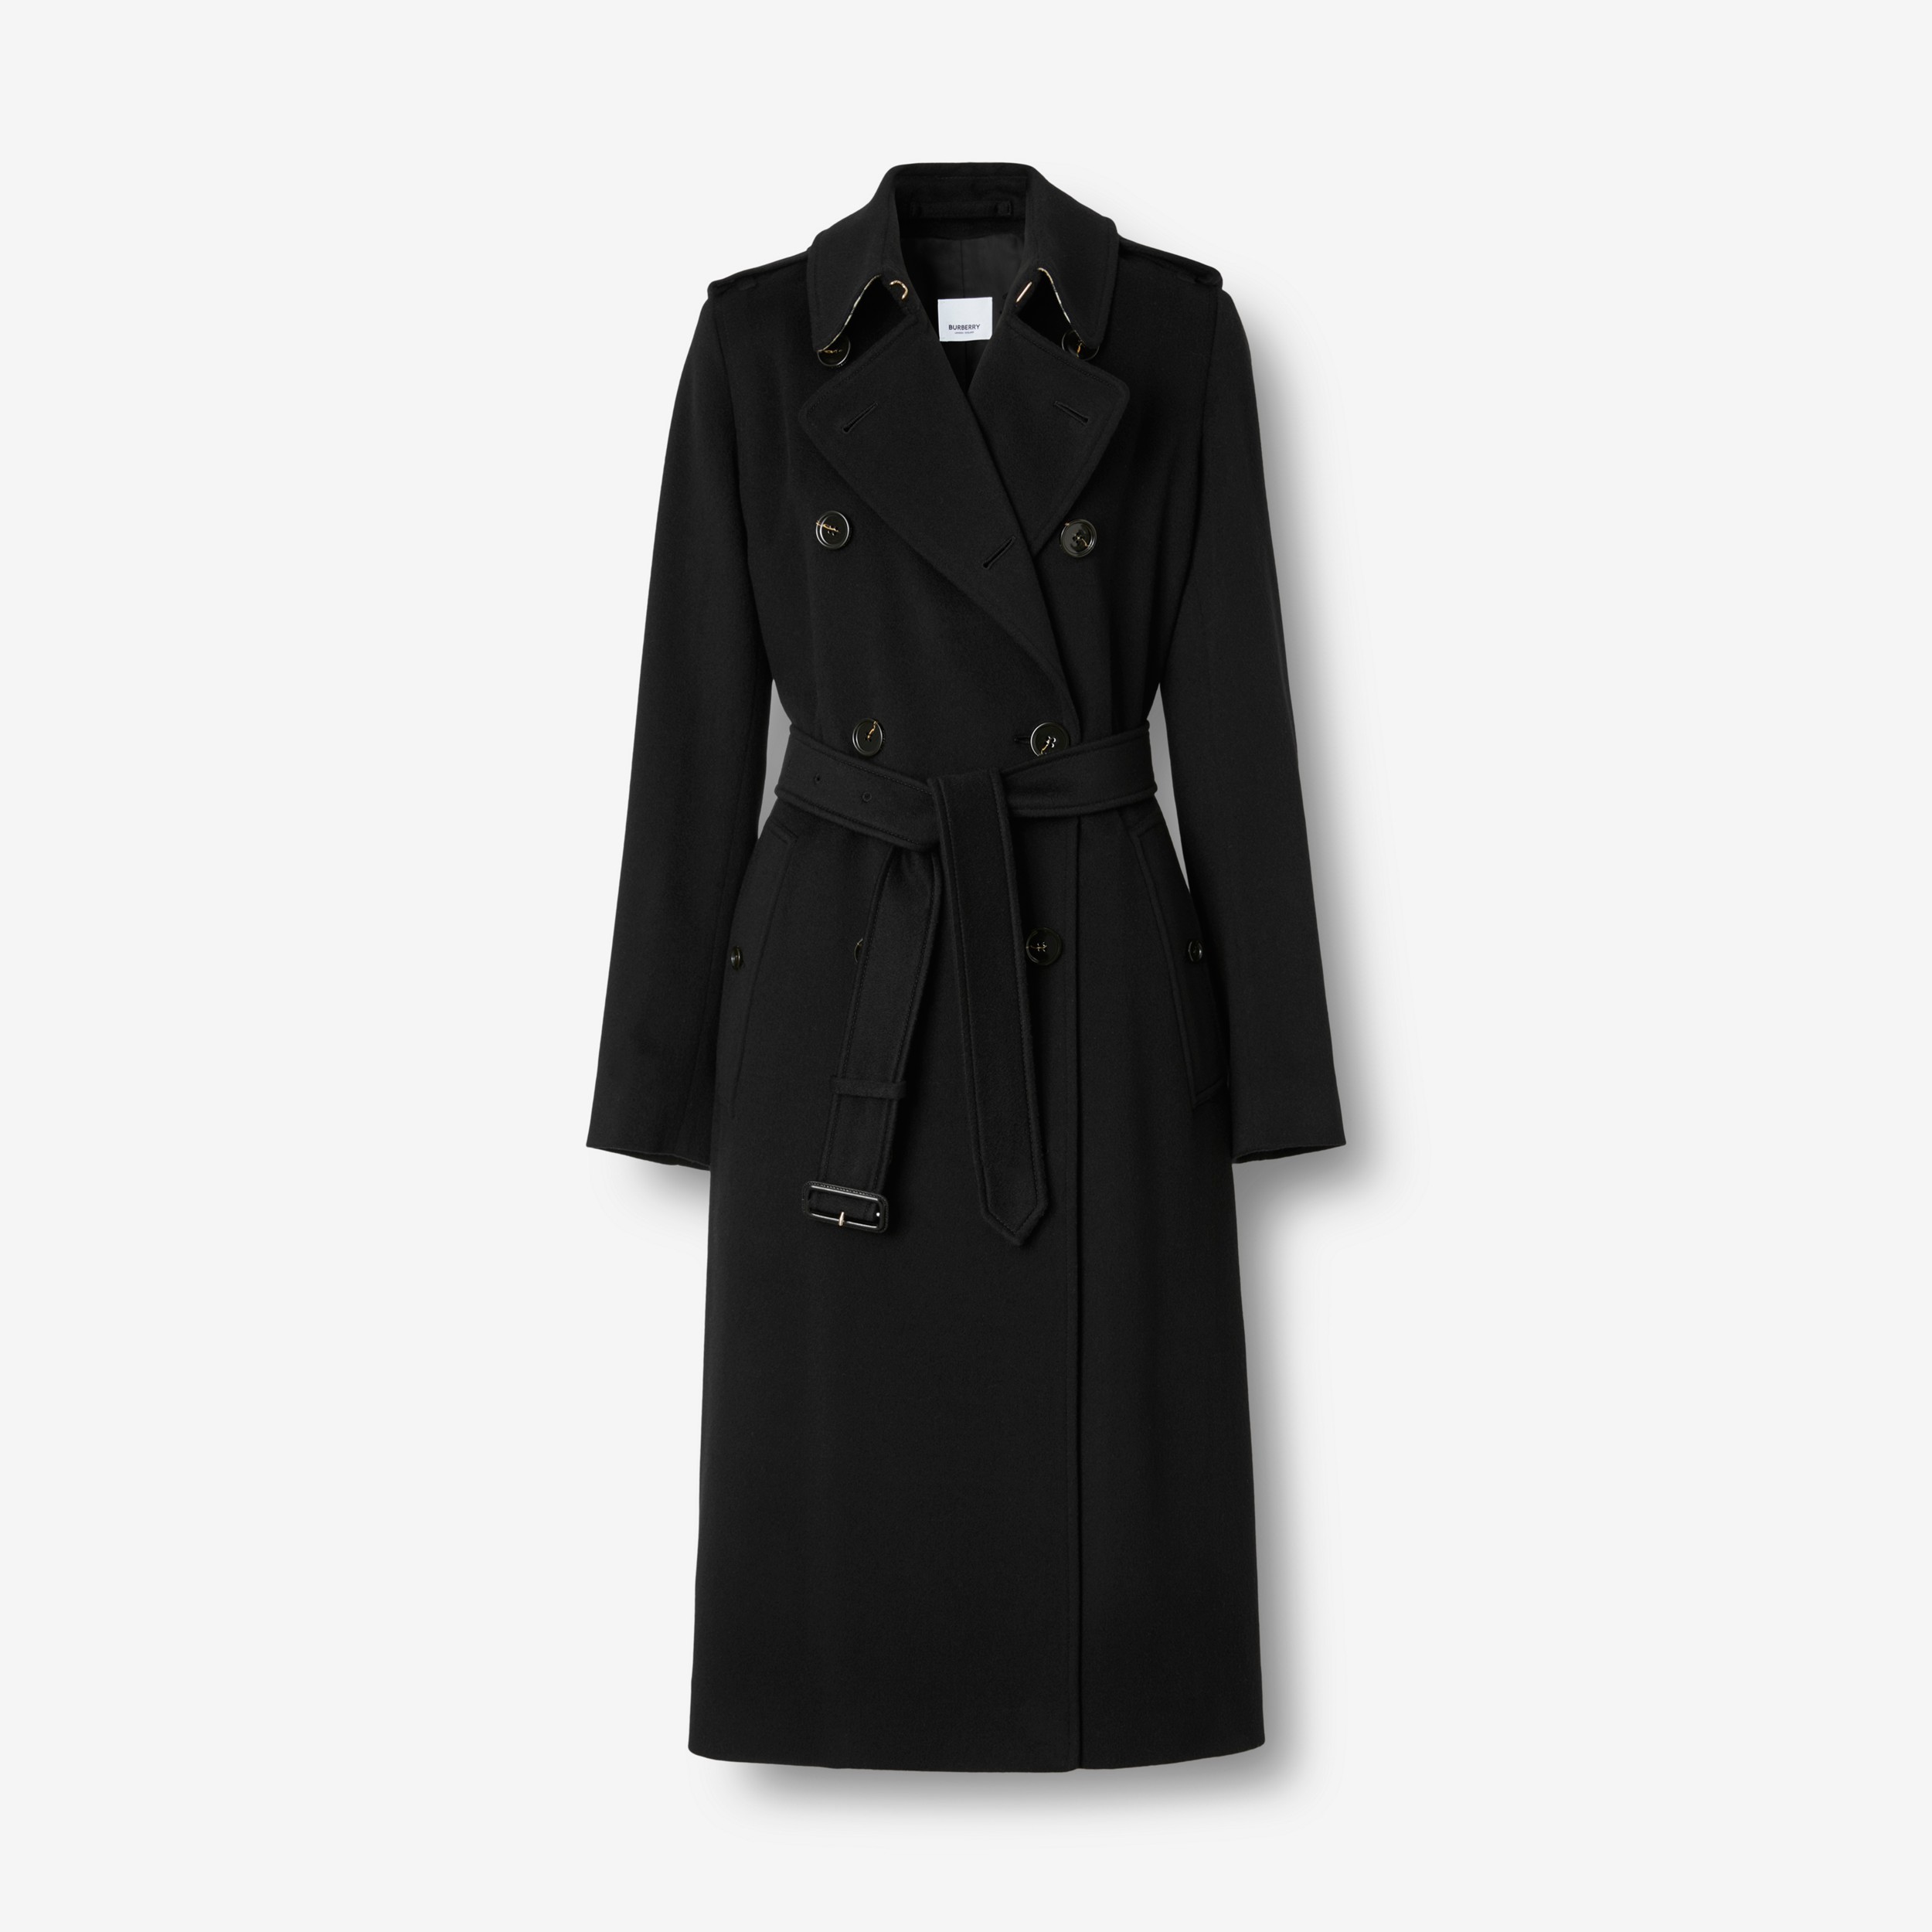 Trench coat Kensington em cashmere (Preto) - Mulheres | Burberry® oficial - 1